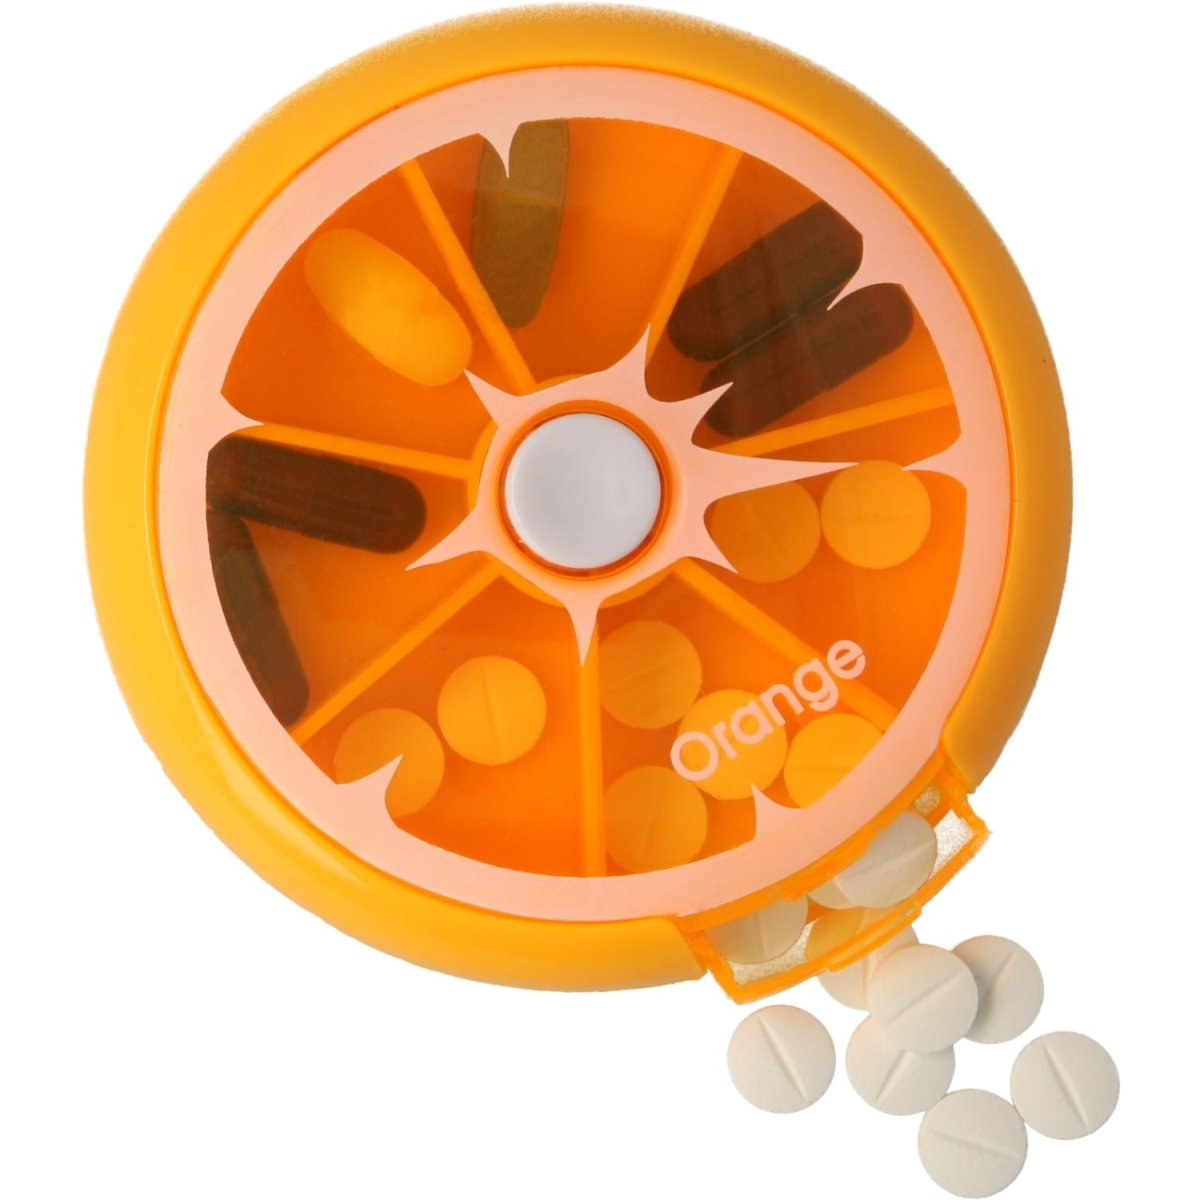 Pastillero pequeño diario bolsillo - 7 compartimentos - Organizador de pastillas pill box estuche redondo - Color naranja - movilcom.com